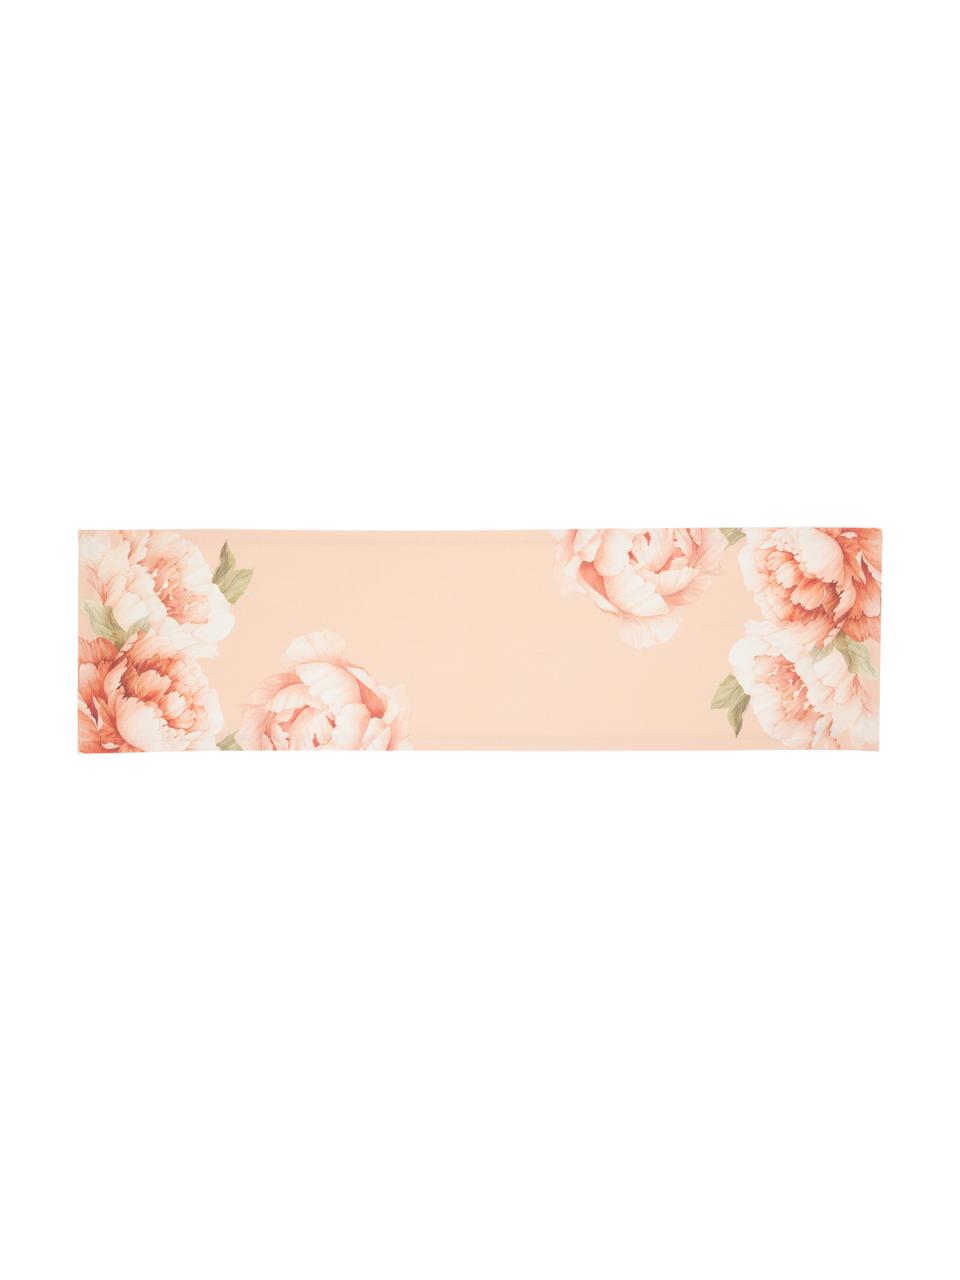 Chemin de table en coton imprimé fleurs Peony, 100 % coton, Rose, motif floral, larg. 40 x long. 145 cm